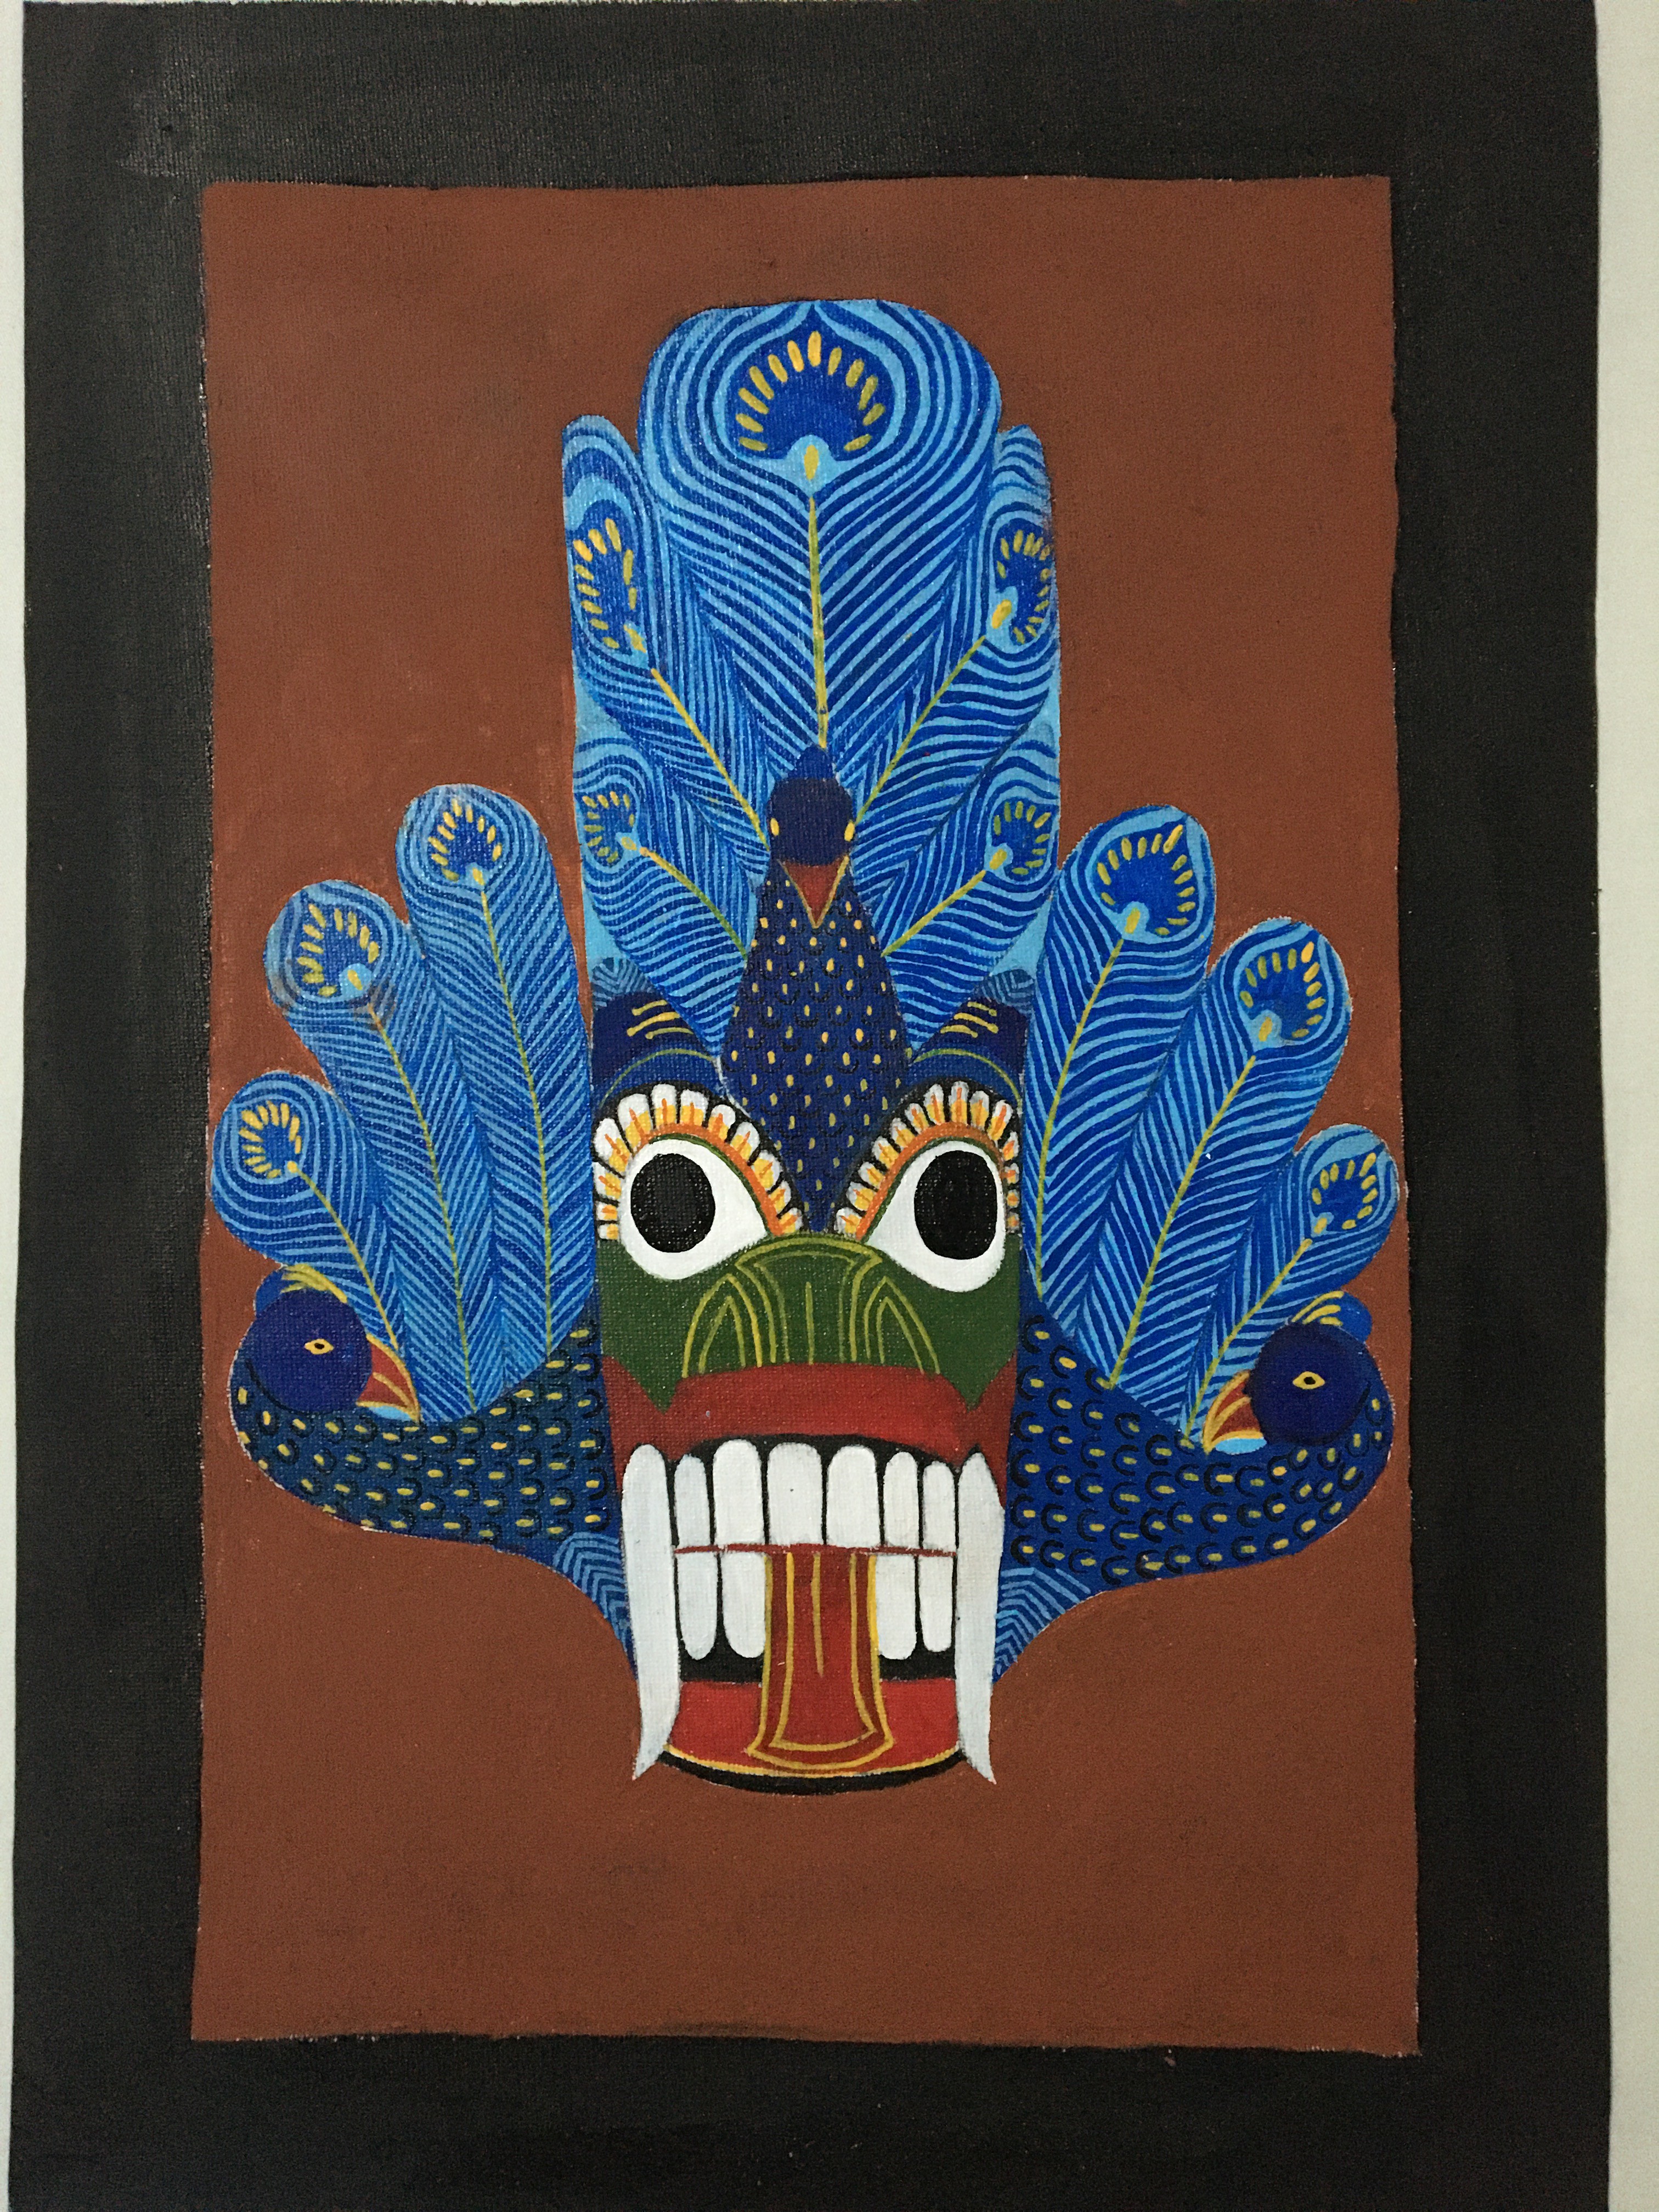 Mayura Raksha Devil Mask by Maleesha samararathne